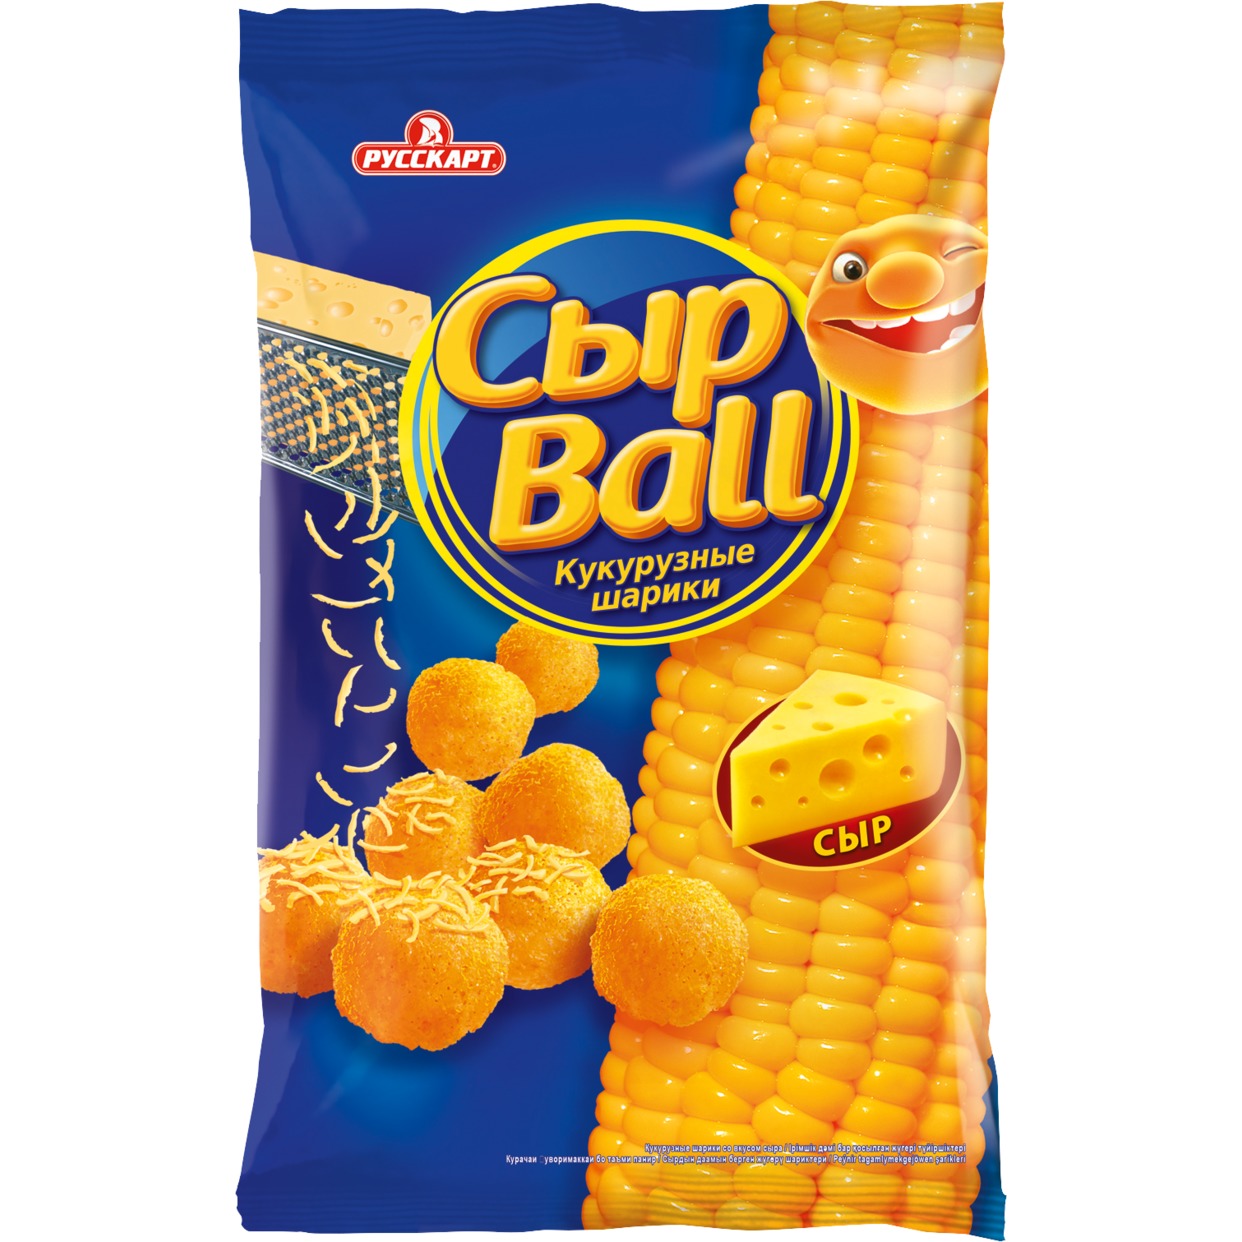 Кукурузные шарики Сырball, со вкусом сыра, 140 г по акции в Пятерочке